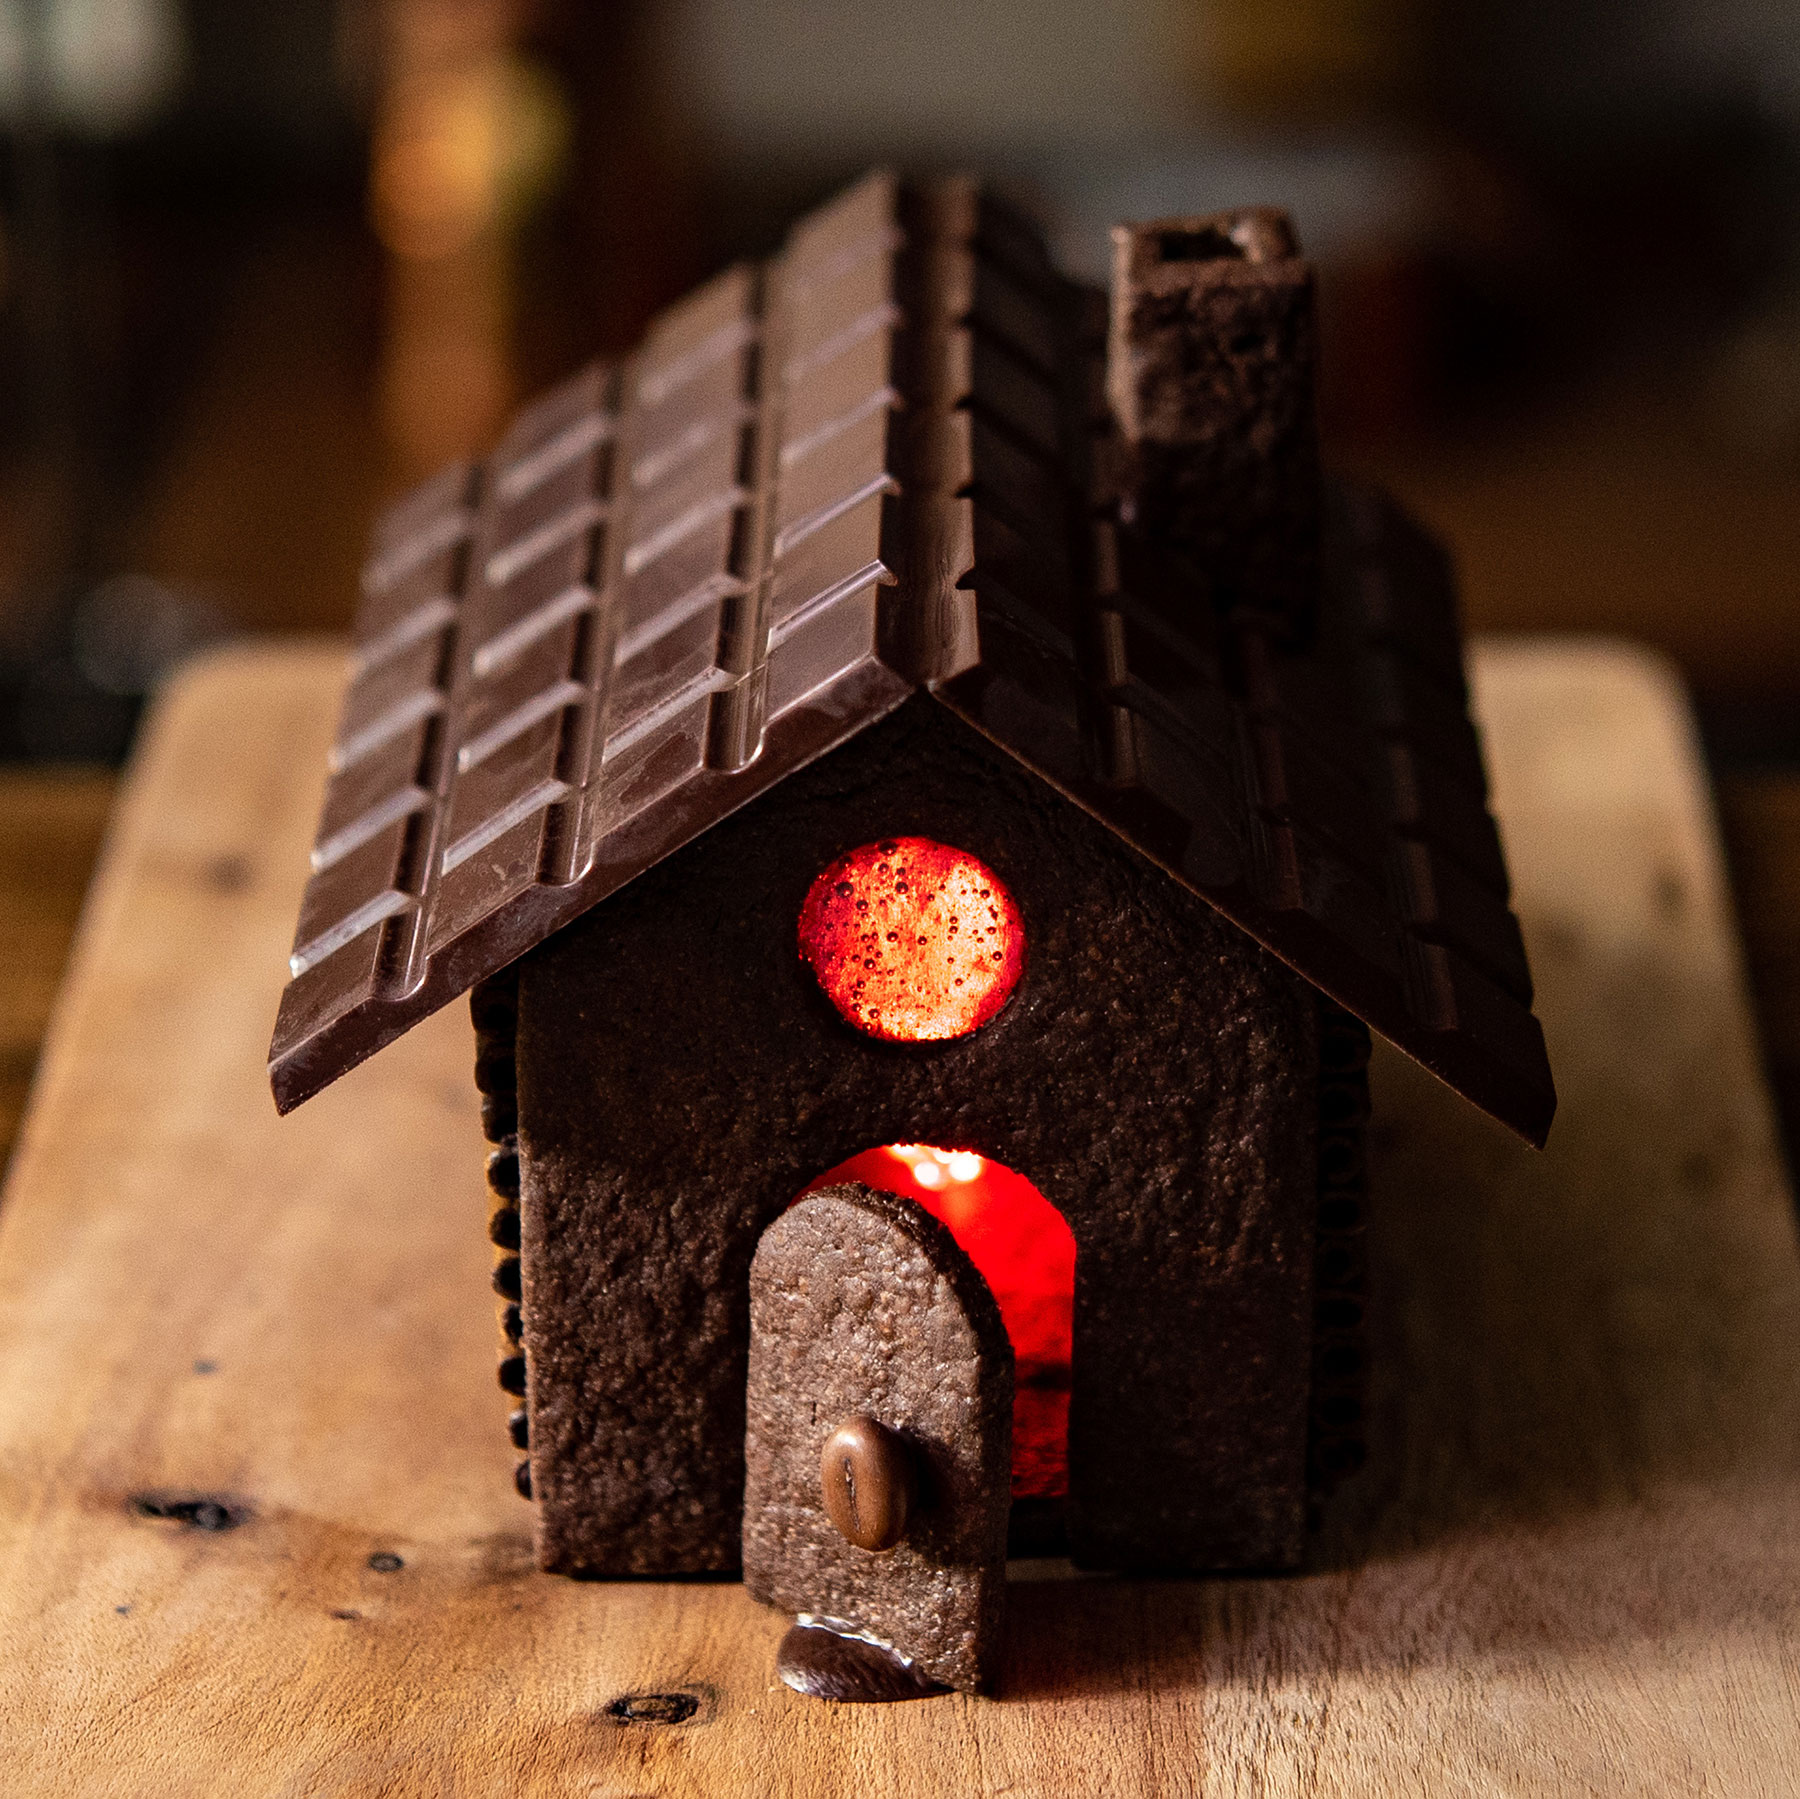 Chocolate Cacao チョコレートカカオ Seijin お菓子の家を設計からガチで作る 1 屋根の板チョコをベースに設計 屋根より少し小さめに床を作る 高さは適度に 2 紙に出力しダンボールと合わせカット 模型で確認 クッキーはバターを練りグラニュー糖